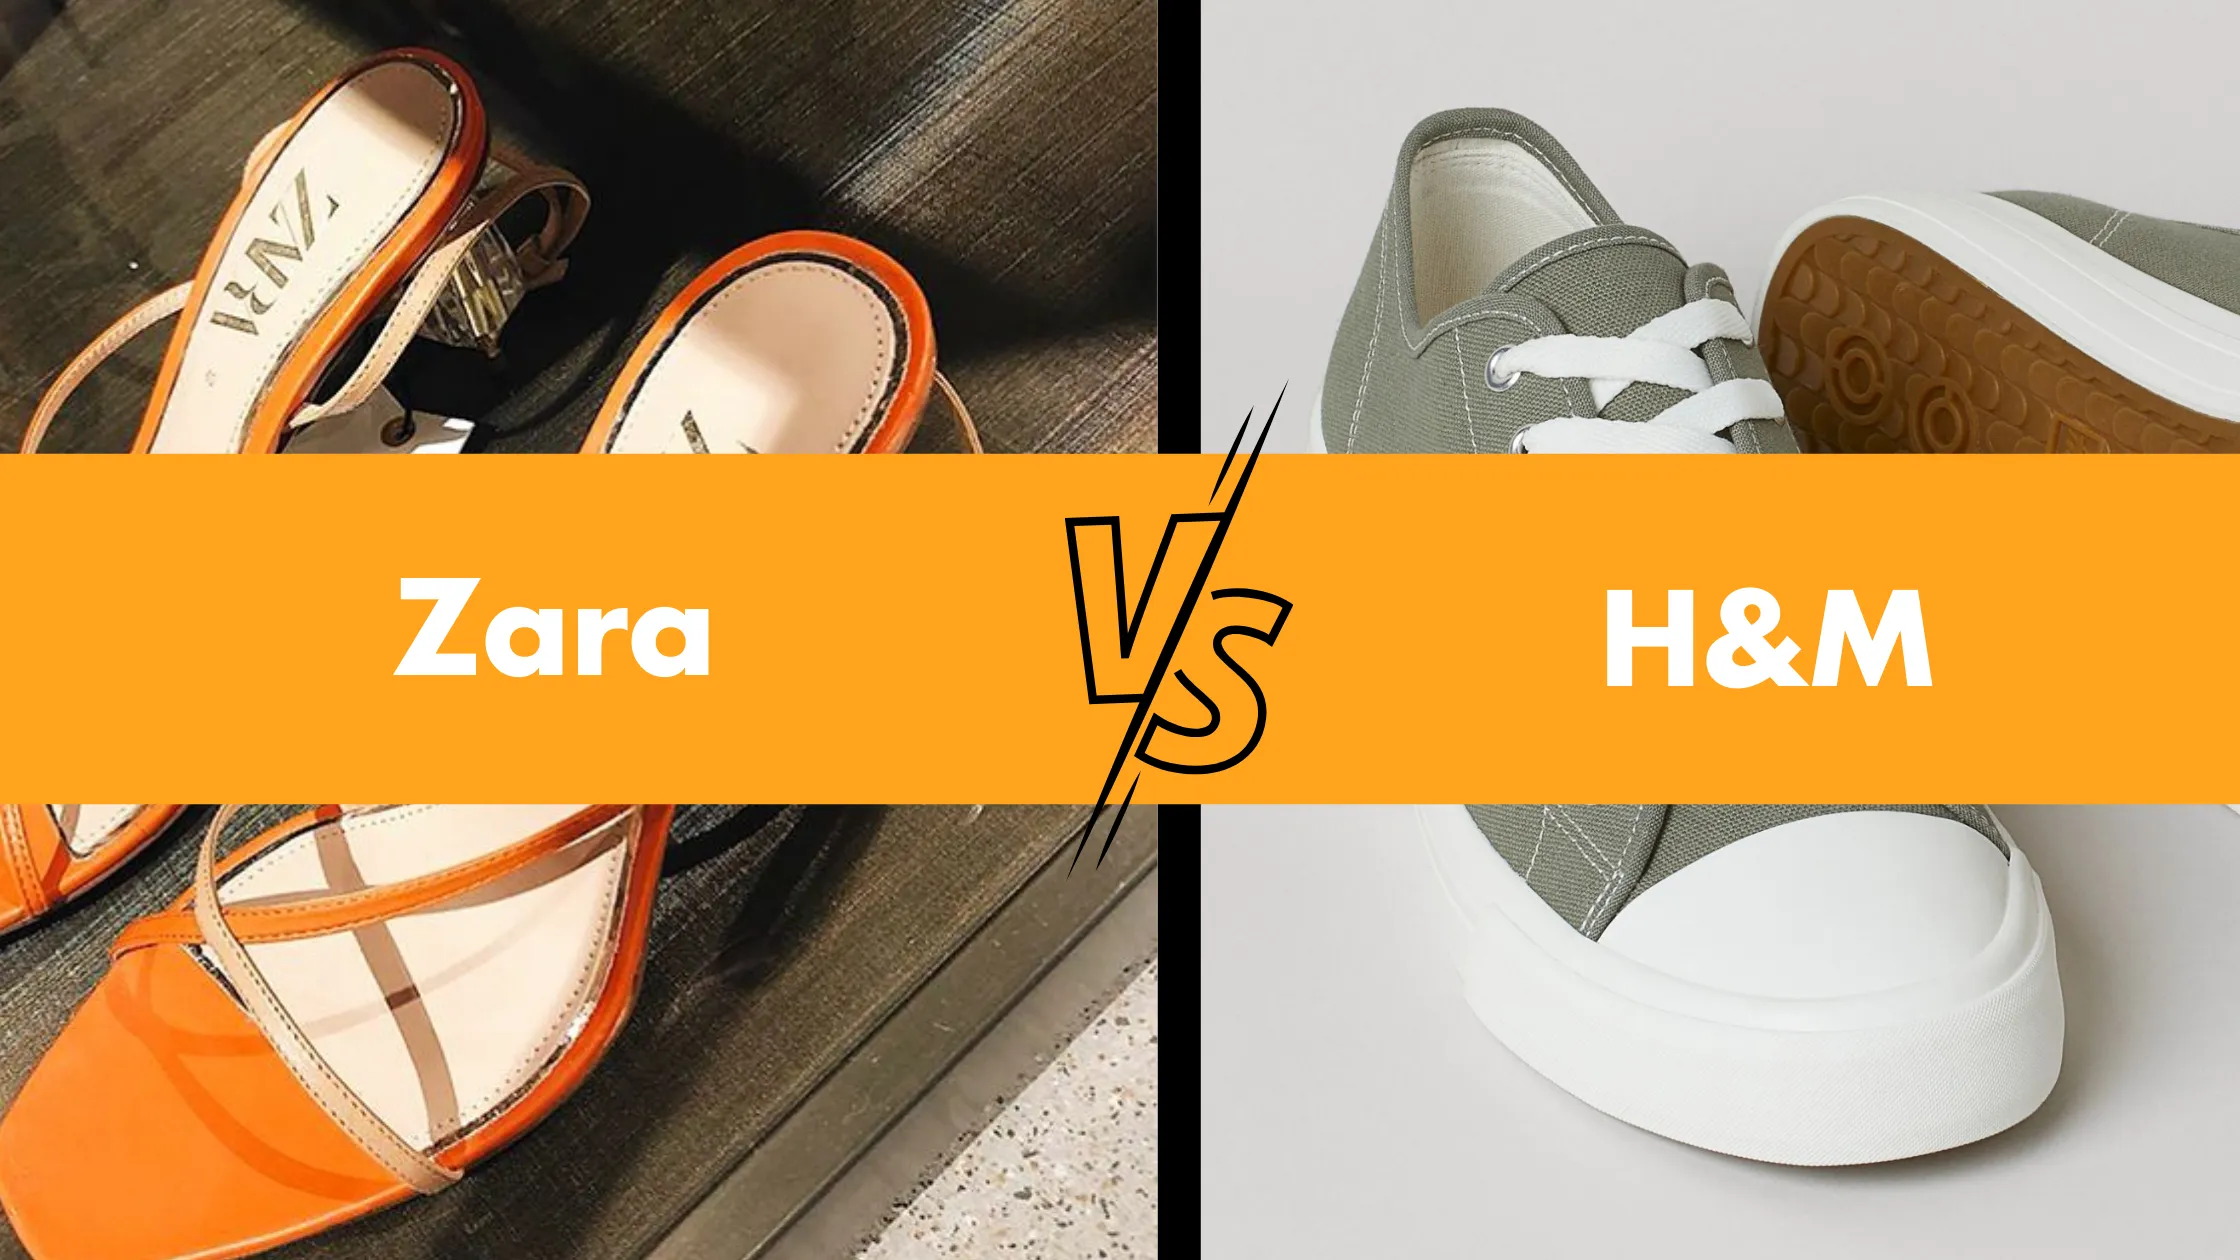 Zara VS H&M